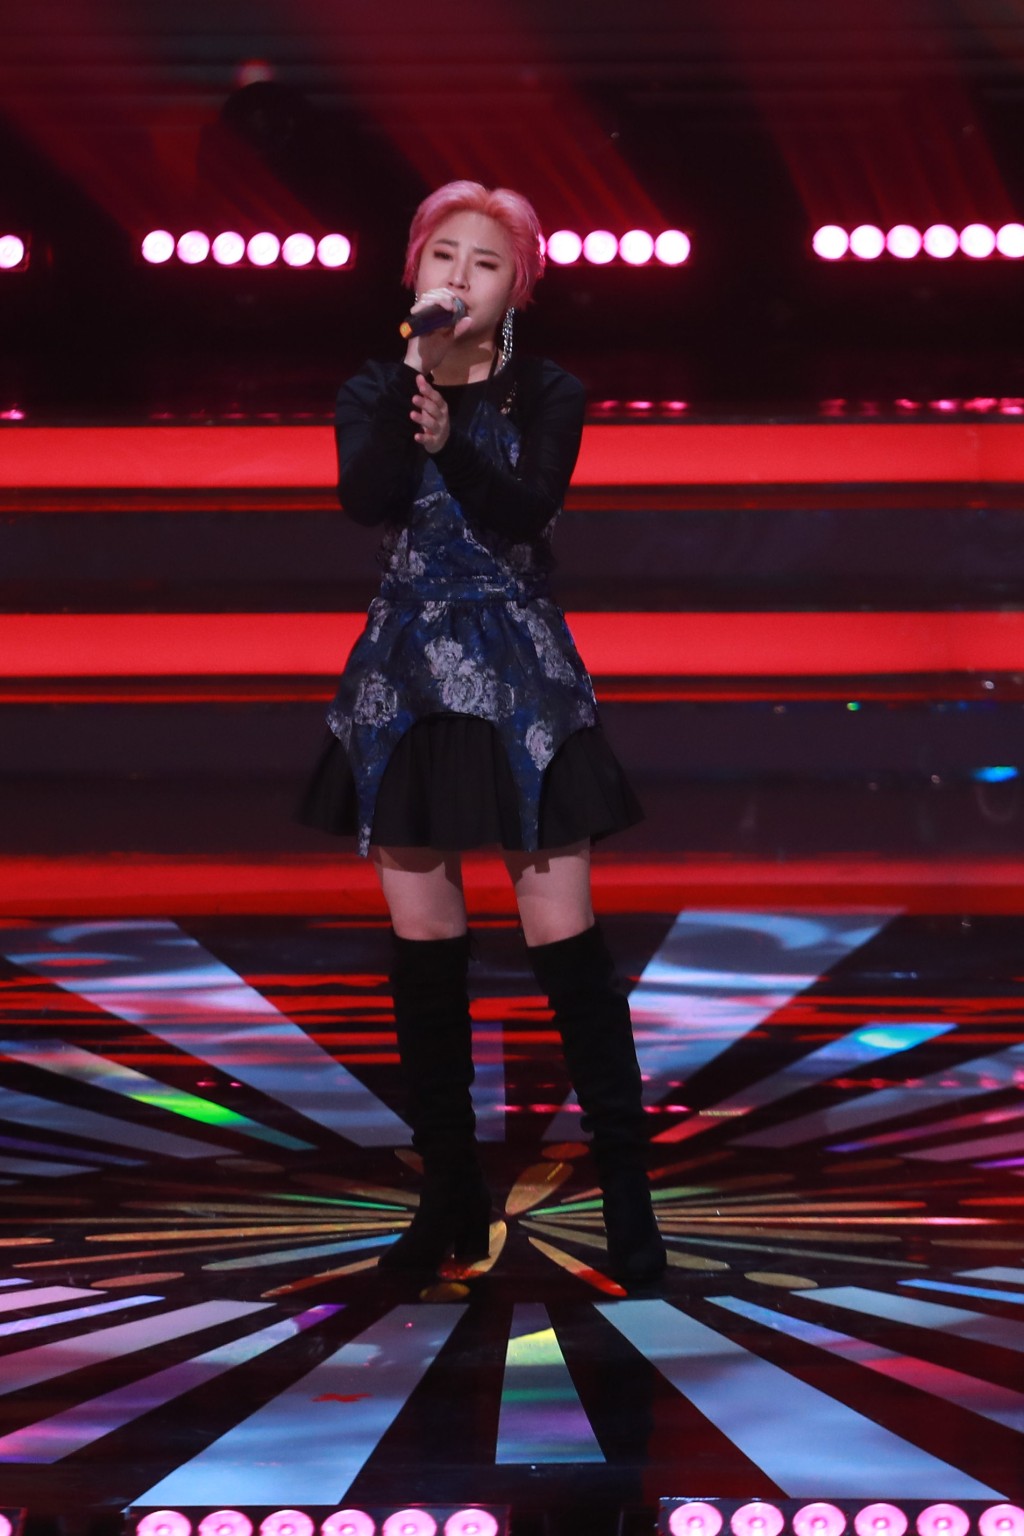 陈俞霏于《中年好声音2》开场唱《蜚蜚》只获得70分。